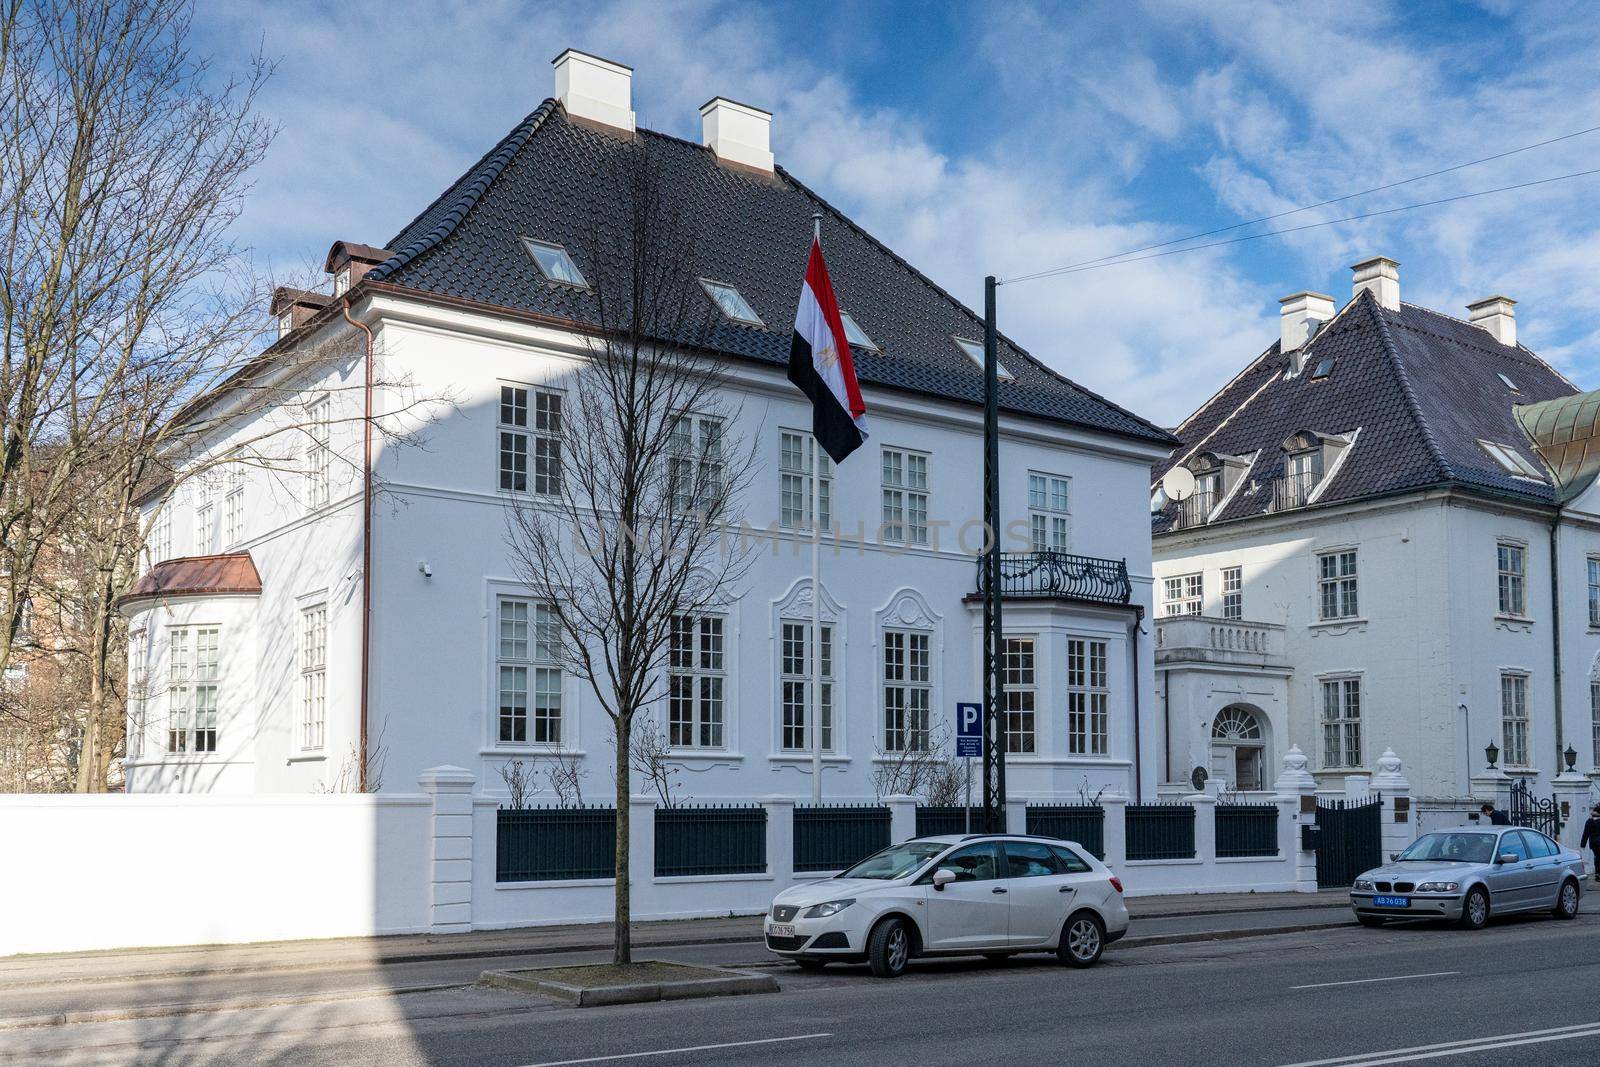 Embassy of Arab Republic of Egypt in Copenhagen, Denmark by oliverfoerstner